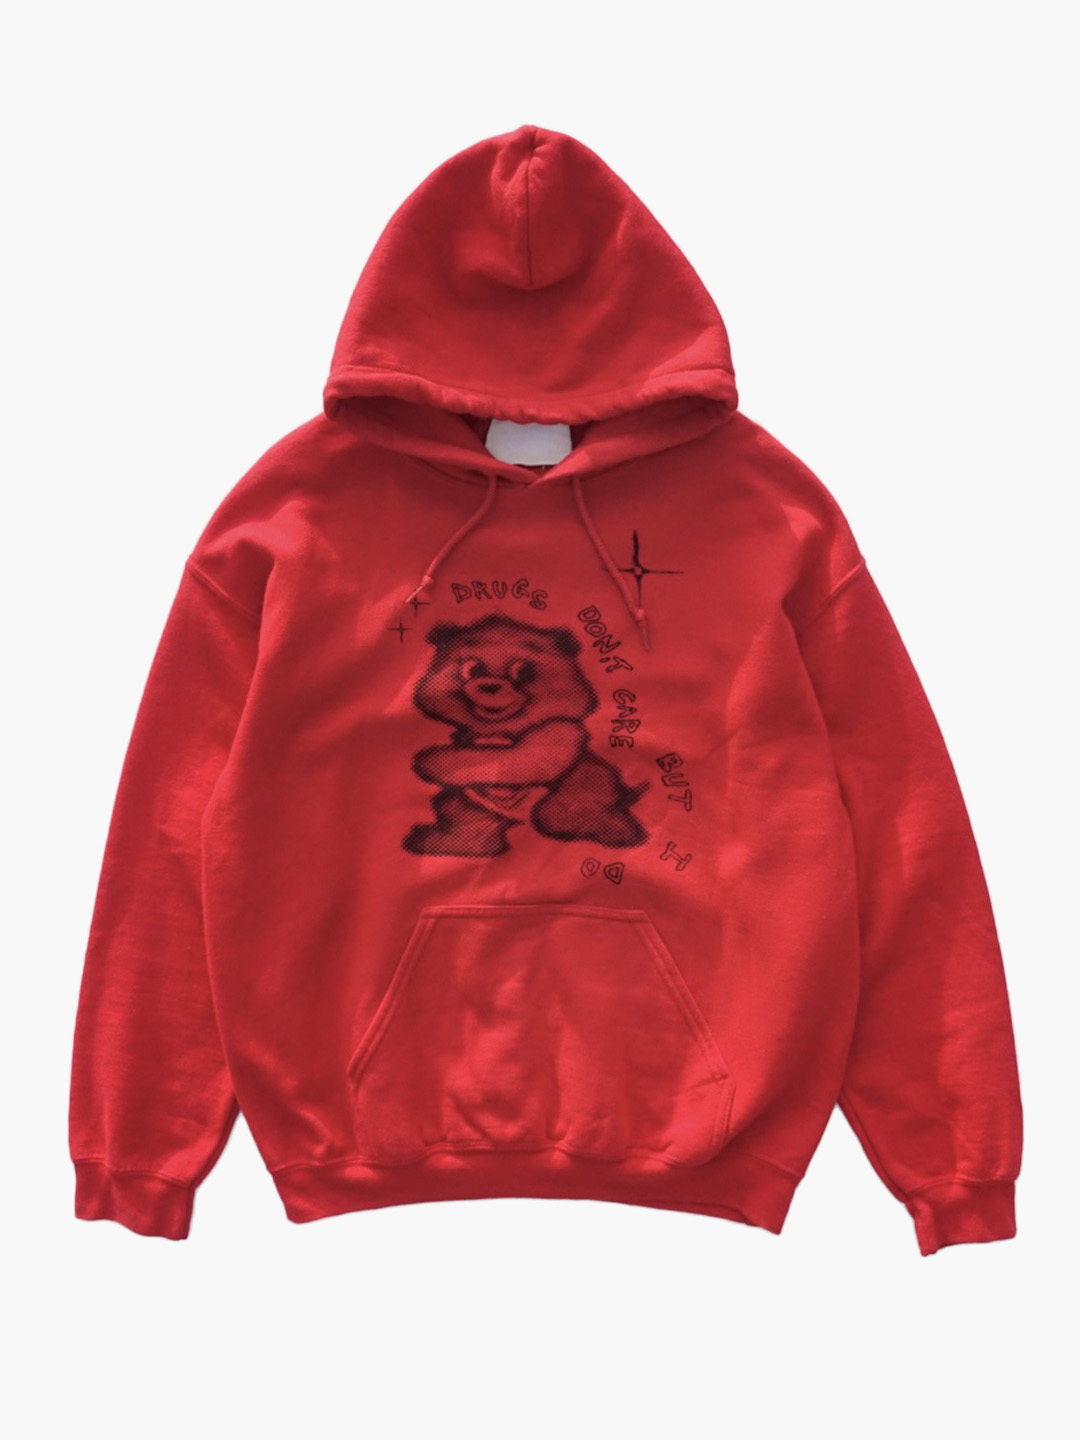 UNUSEDDrug bear hoodie